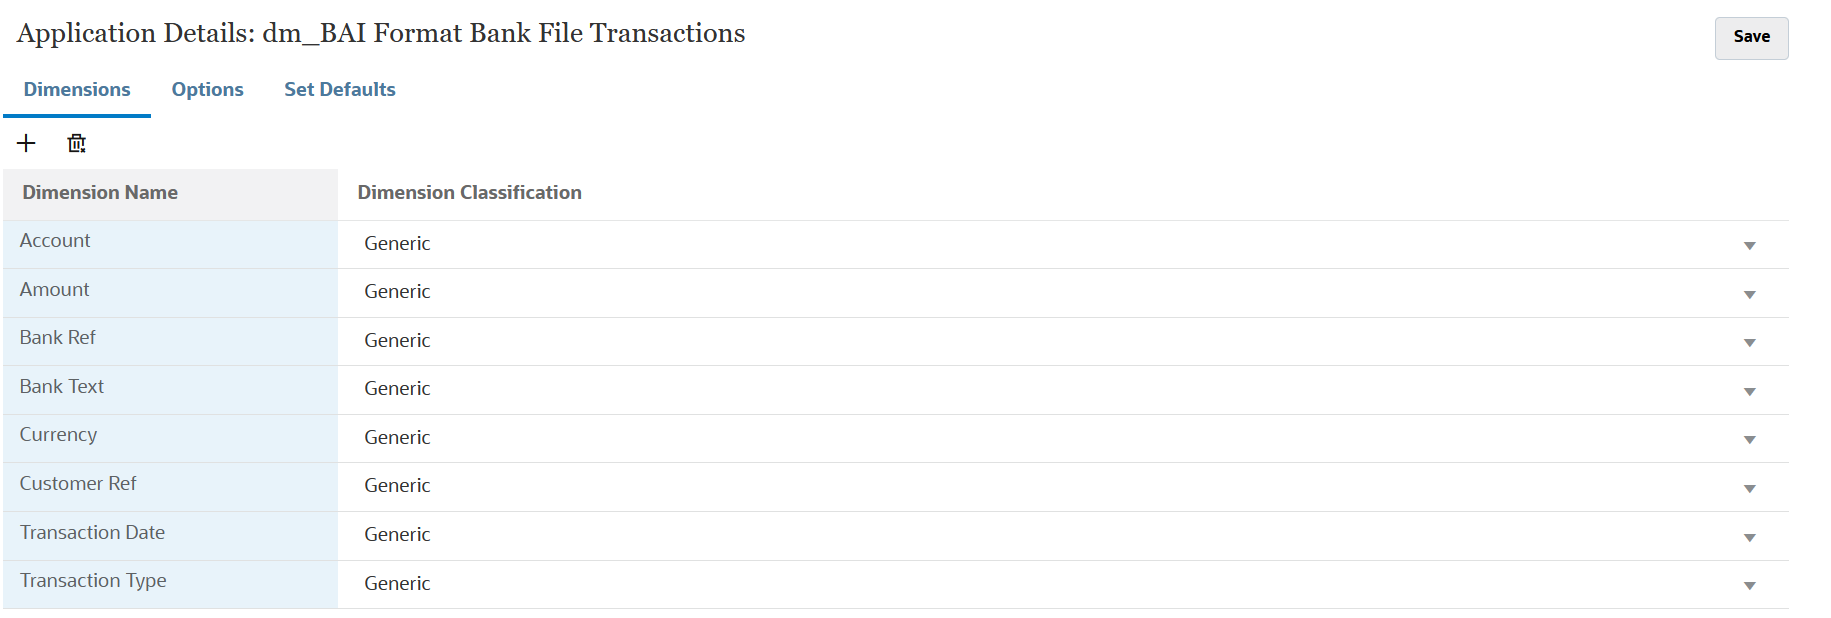 A imagem mostra detalhes da dimensão de Transações em Arquivos de Banco com formato BAI